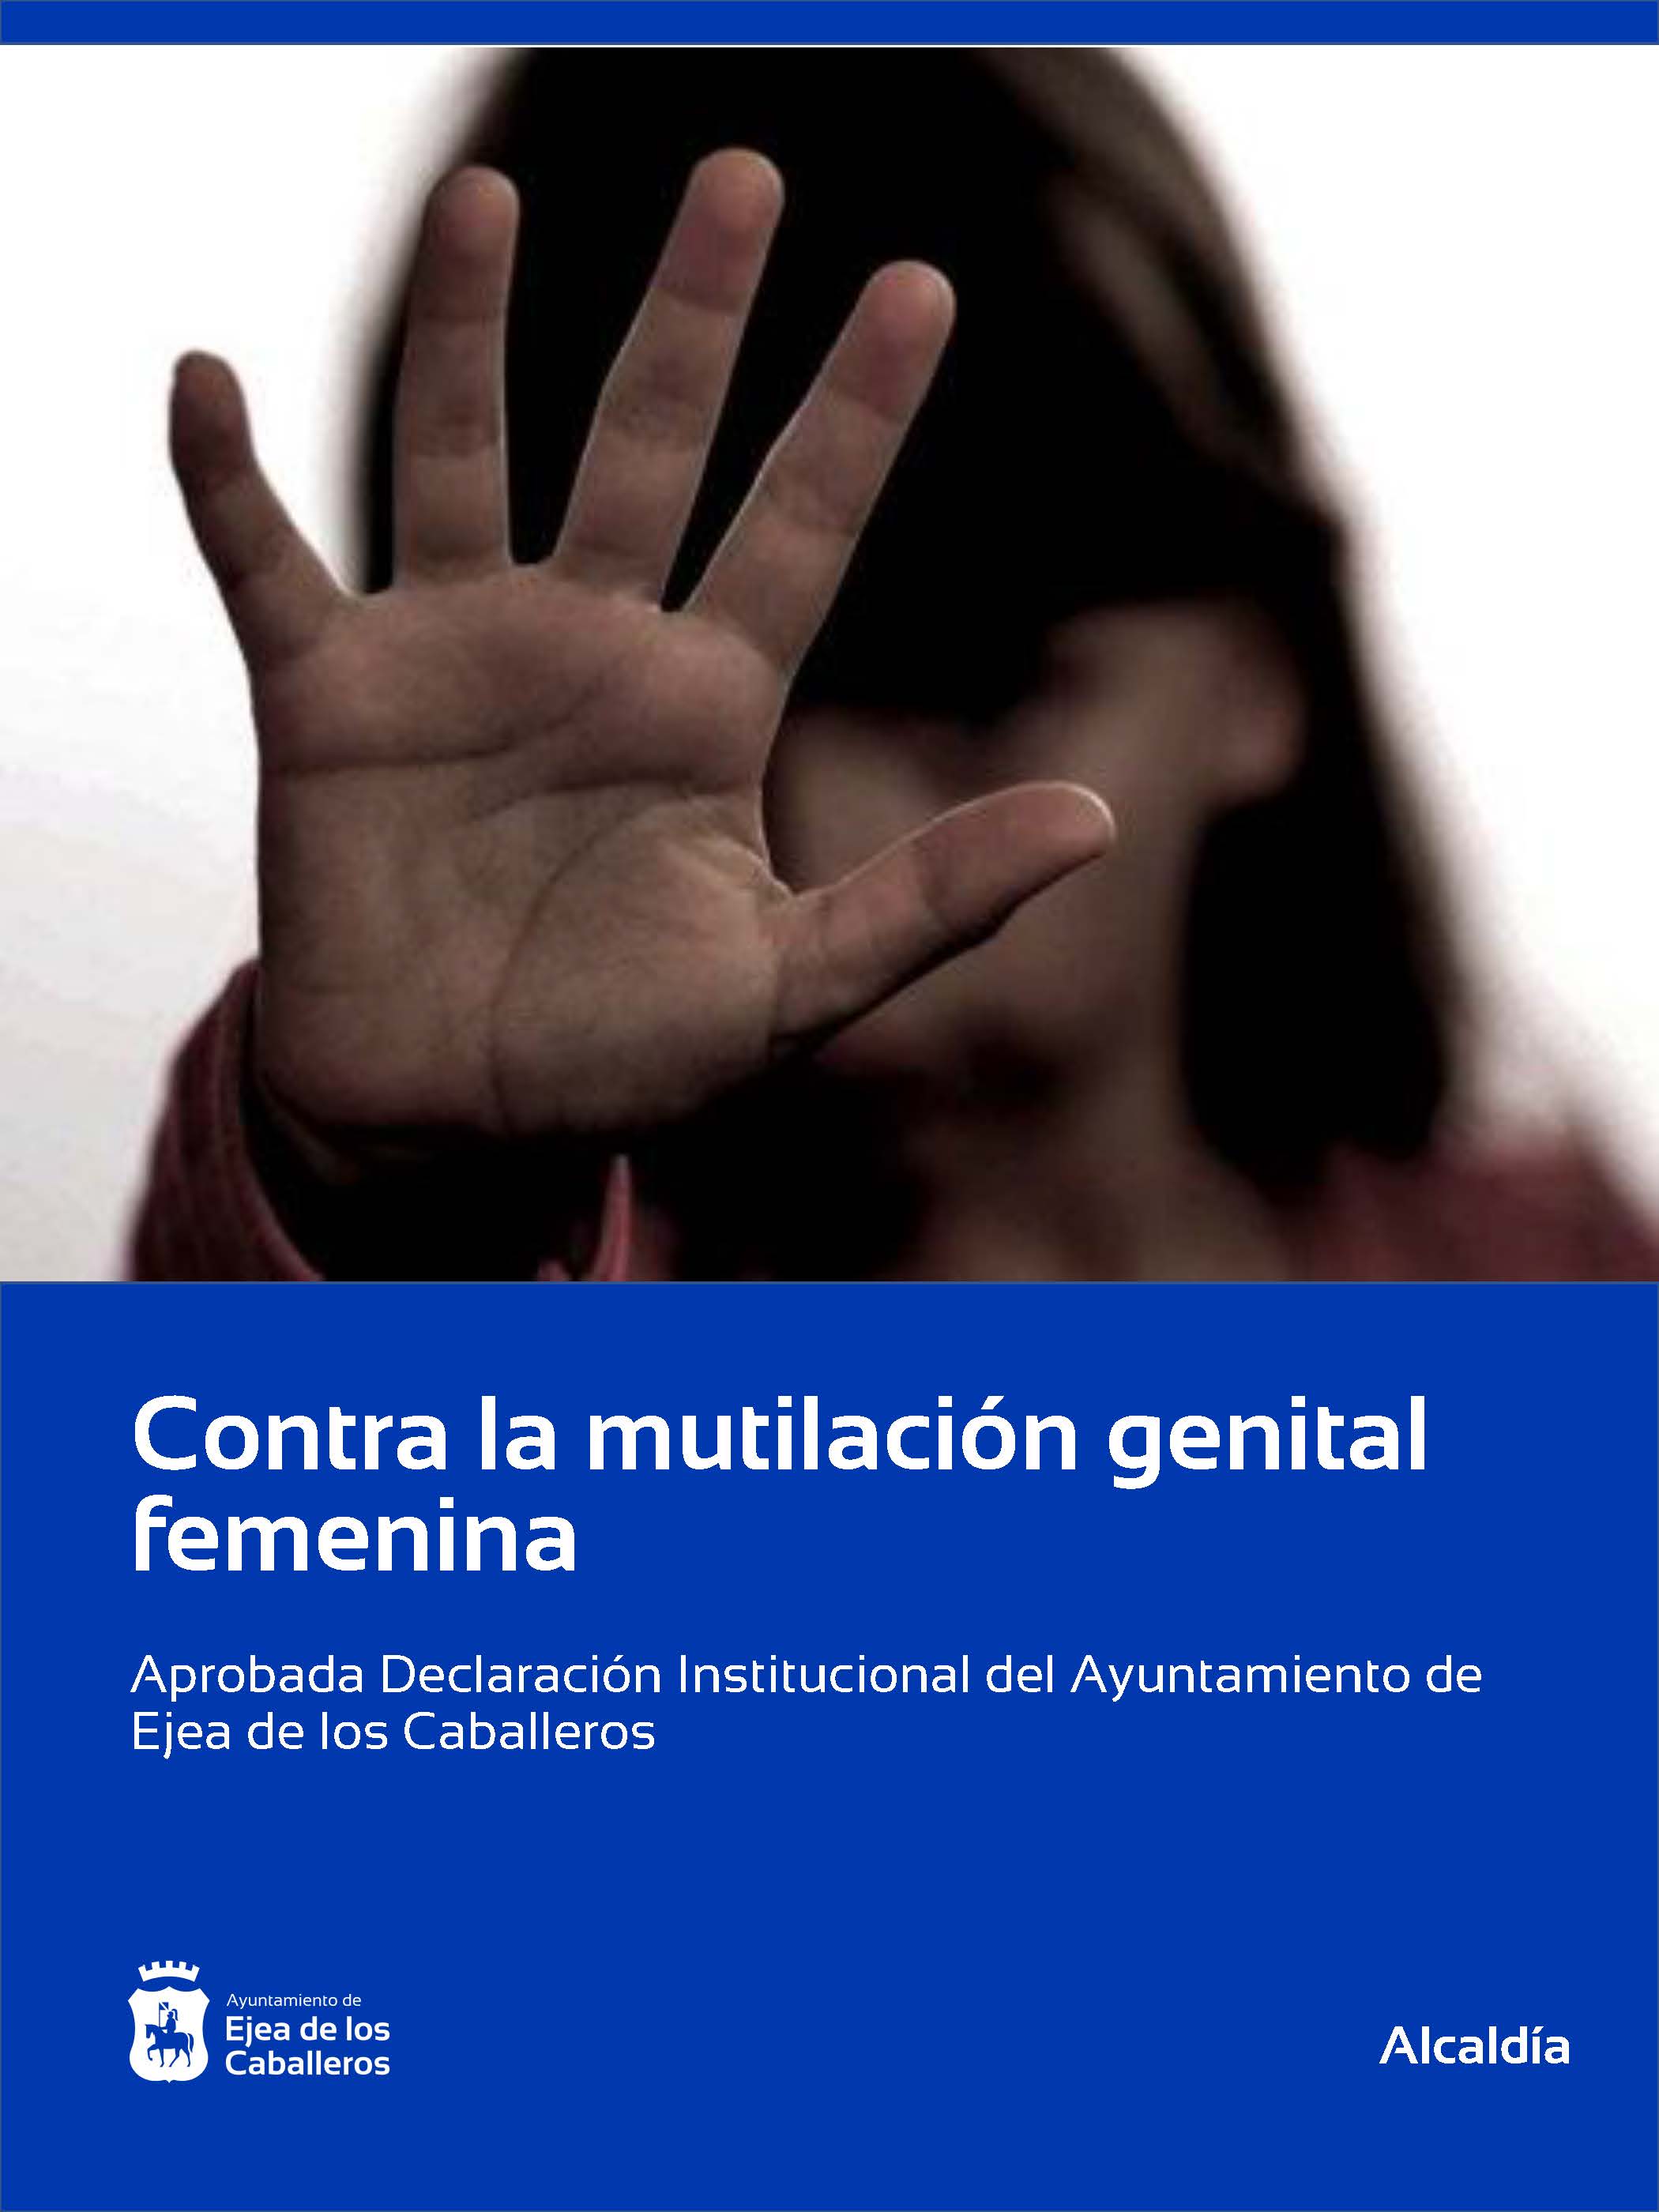 En este momento estás viendo El Ayuntamiento de Ejea de los Caballeros aprueba una Declaración Institucional contra la mutilación genital femenina